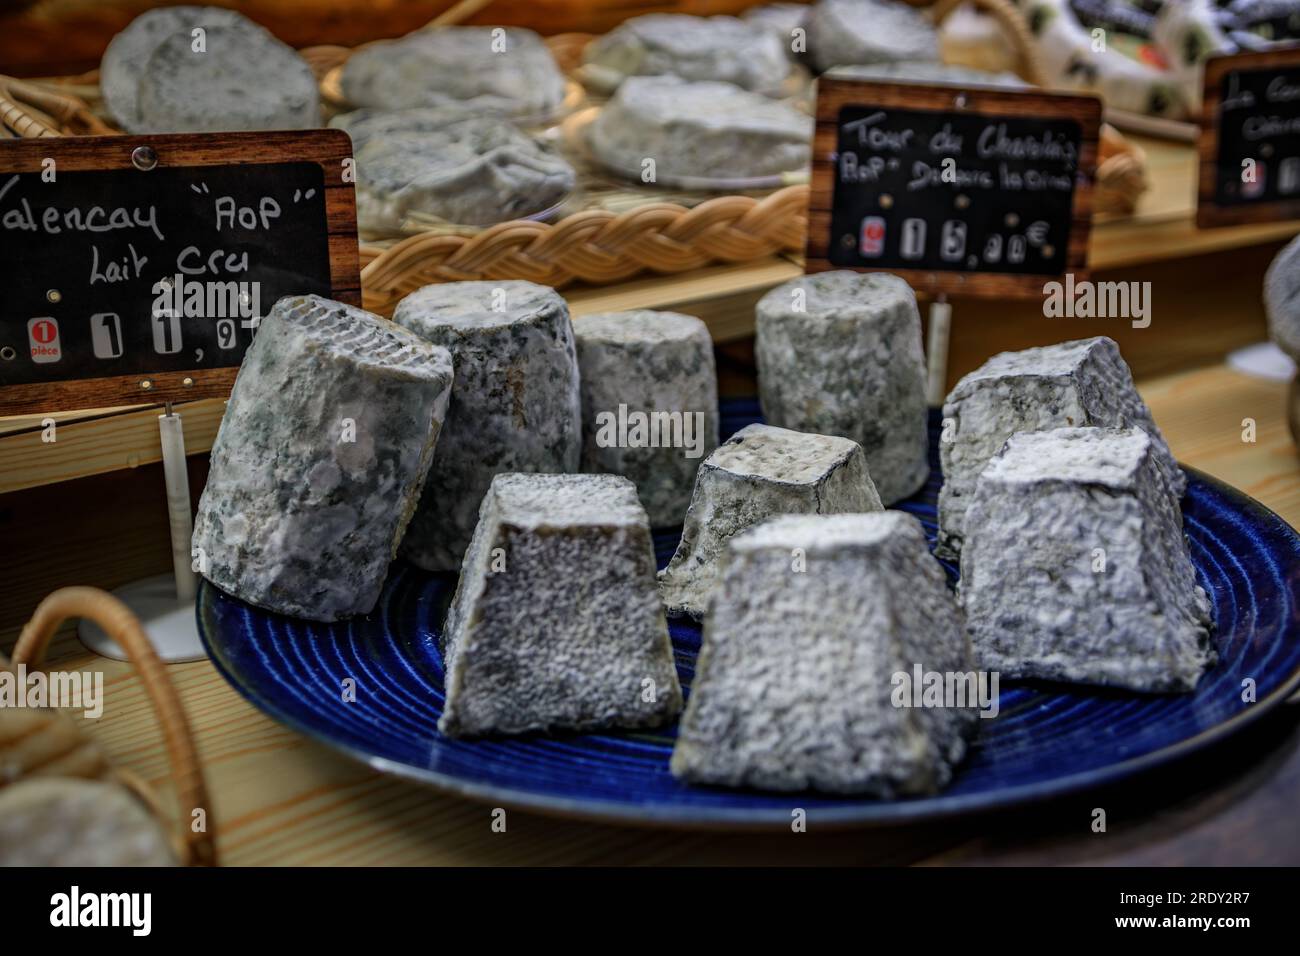 Fromage de chèvre mûr pyramide et rondins dans une fromagerie artisanale de la vieille ville ou vieil Antibes, dans le sud de la France Banque D'Images